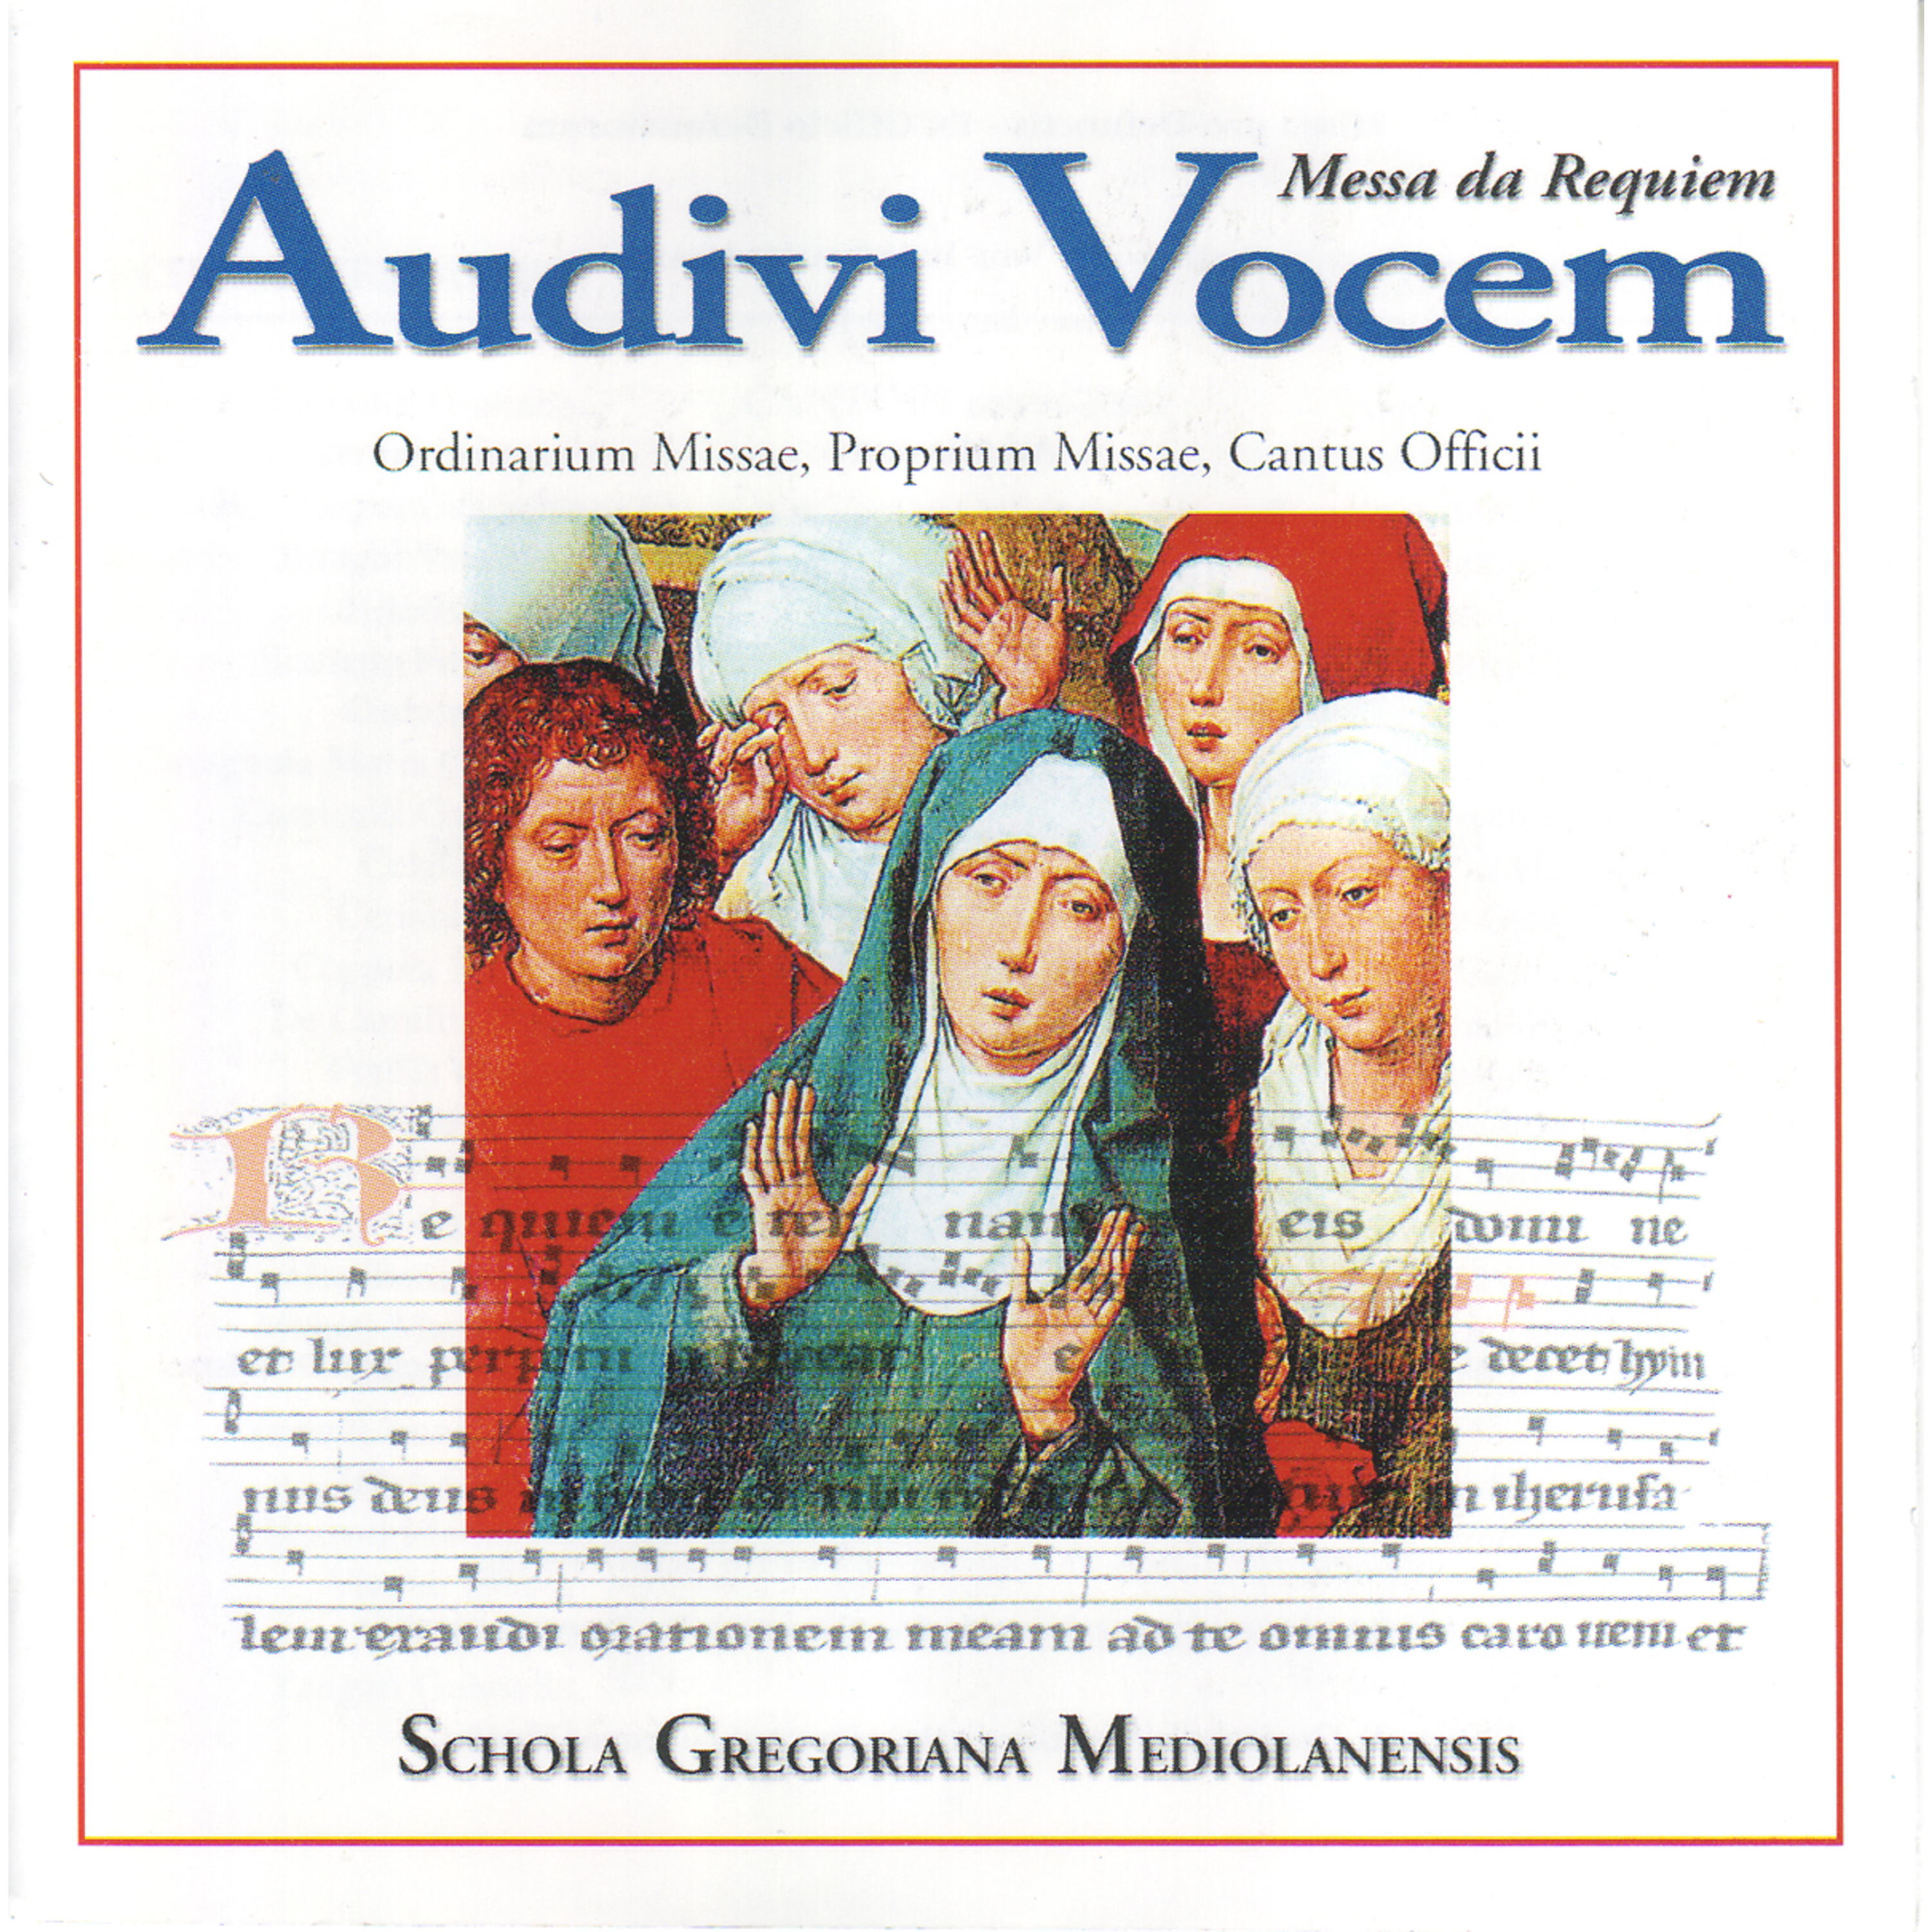 Messa da Requiem: Communio: Lux aeterna